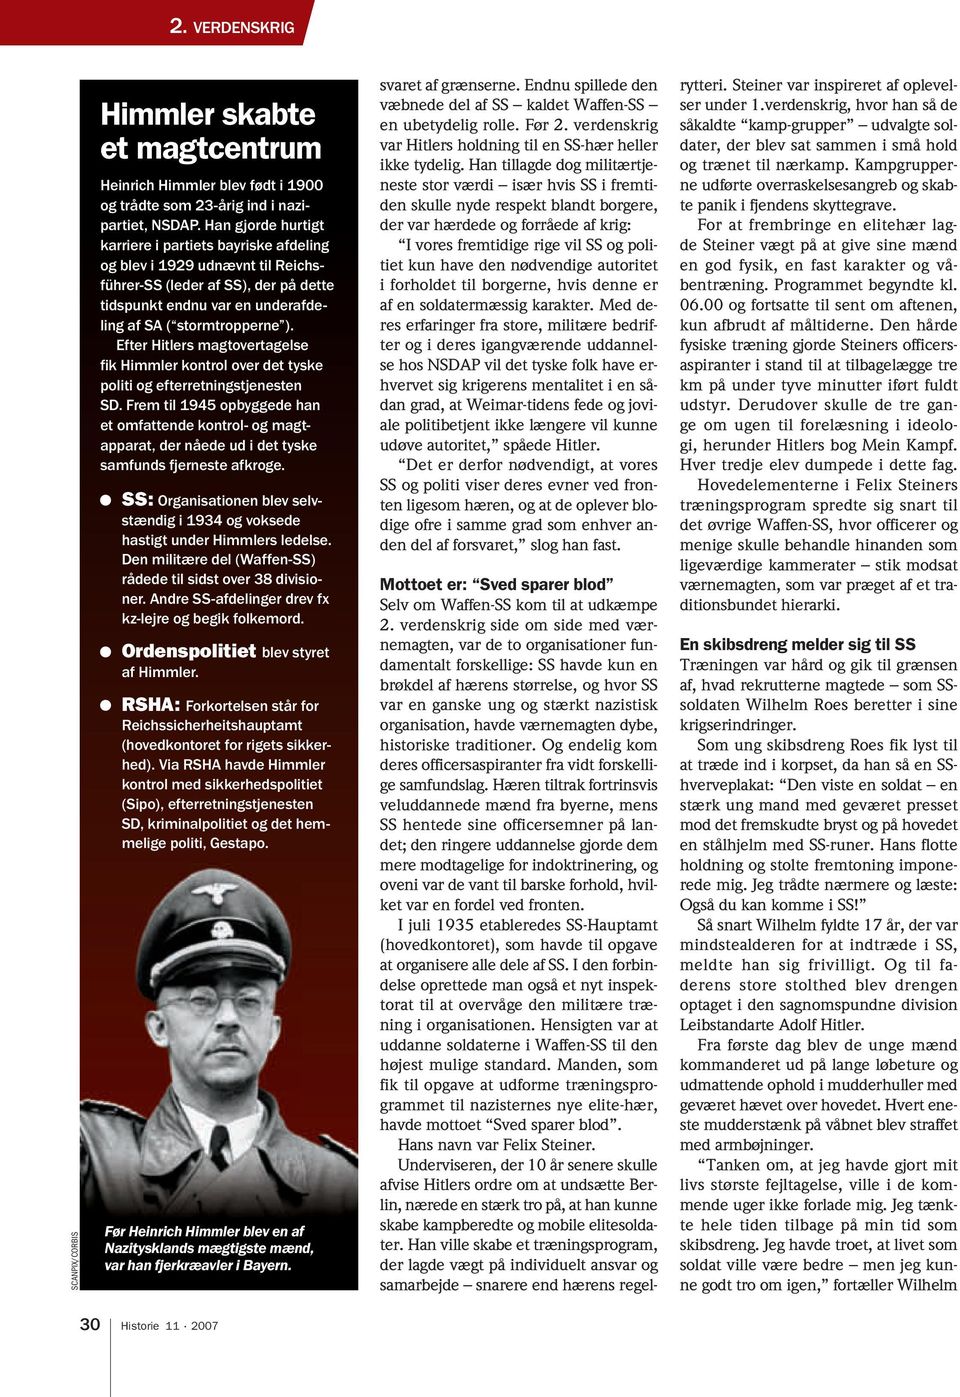 Efter Hitlers magtovertagelse fik Himmler kontrol over det tyske politi og efterretningstjenesten SD.